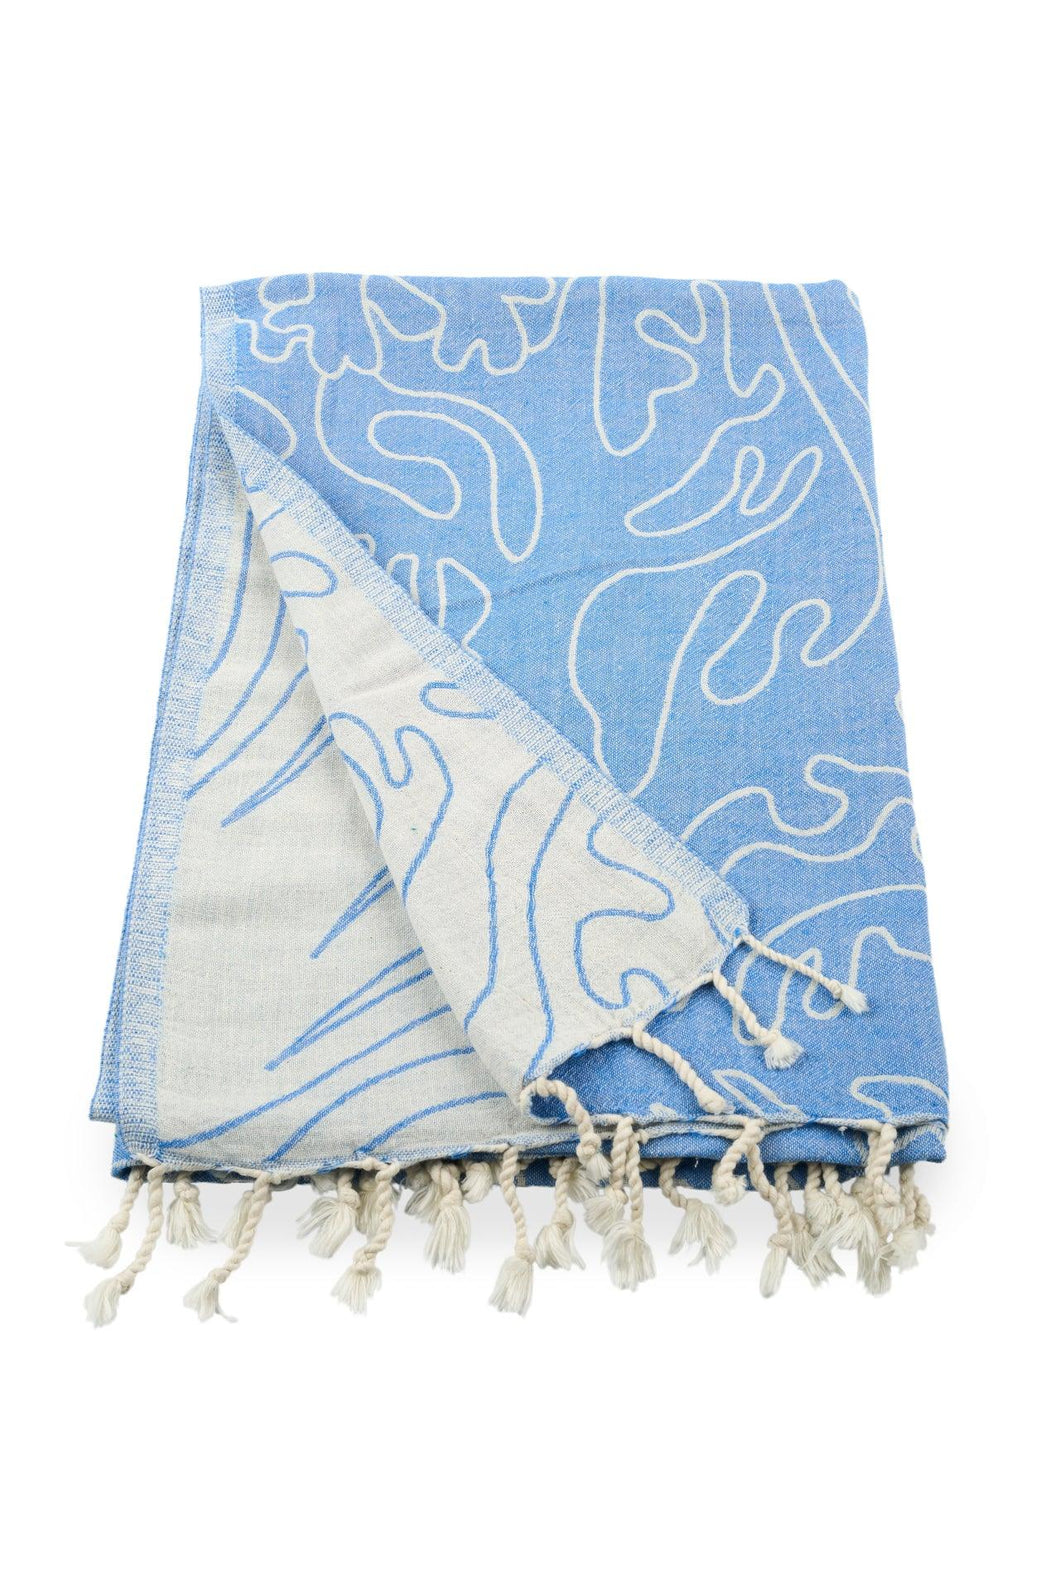 Sea Life - Luxury Hammam Towel/Peshtemal.